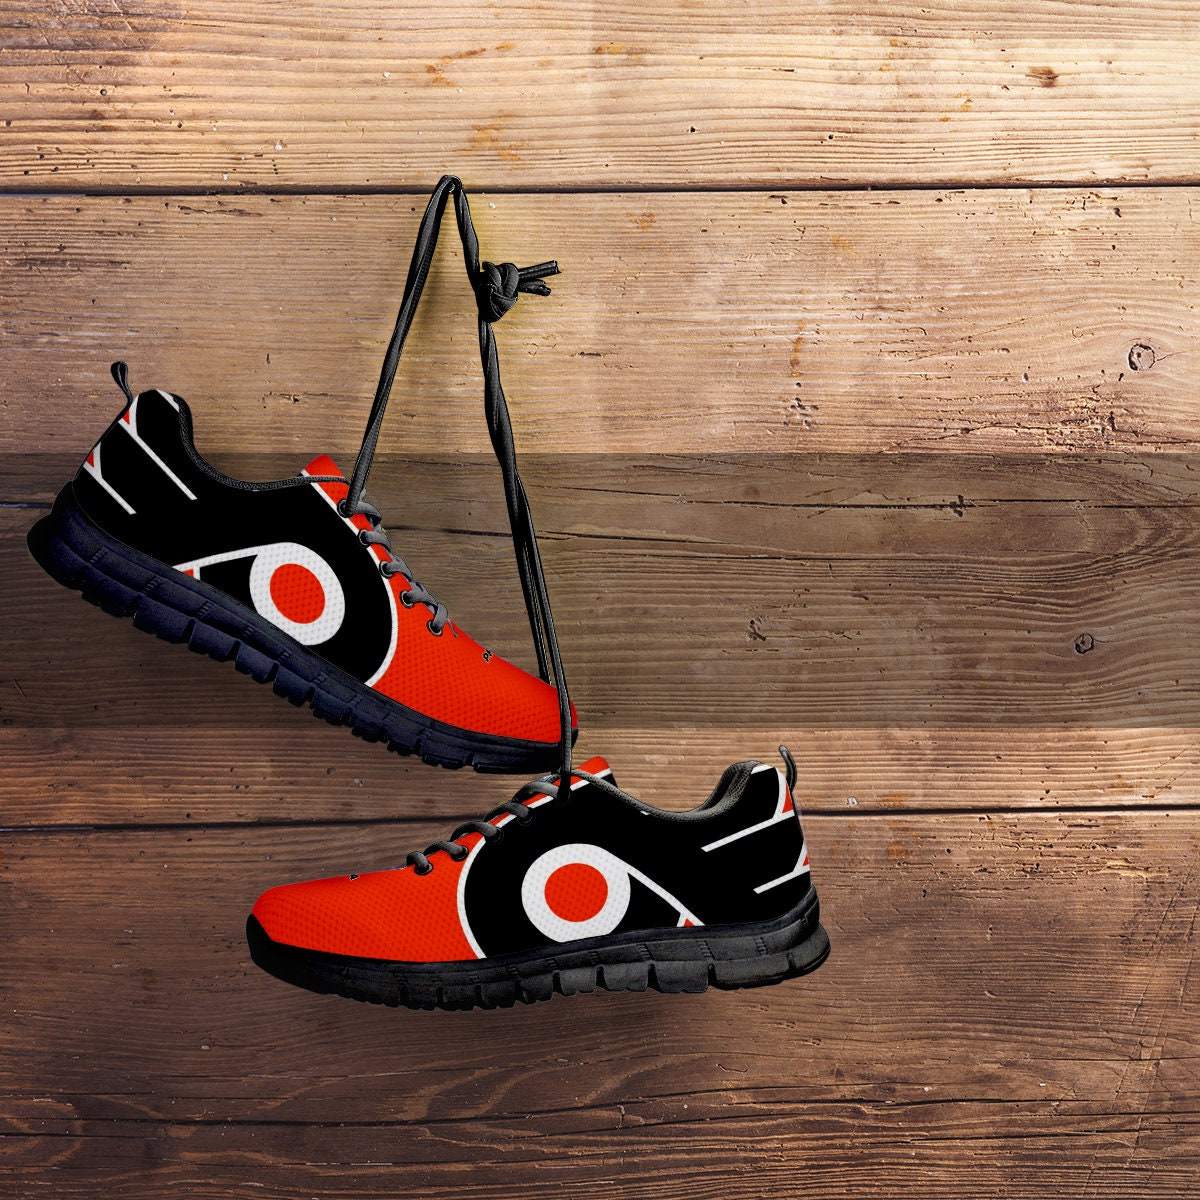 Philadelphia Flyers Fan Unofficial Running Shoes Sneakers - Etsy